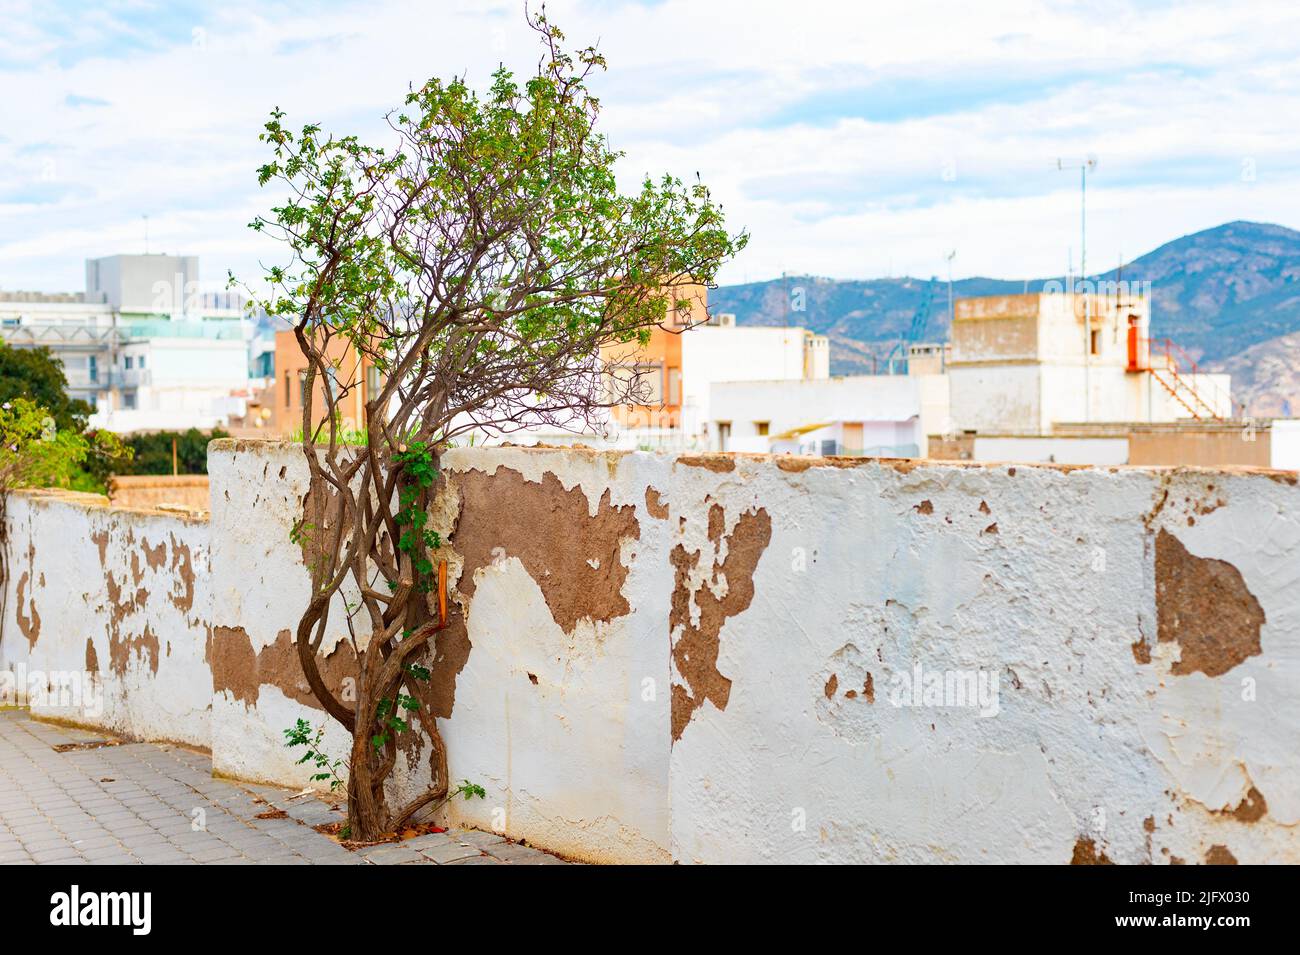 Árbol de esgrima en mal estado, arquitectura de Cartagena y vista a la montaña en el fondo, España Foto de stock